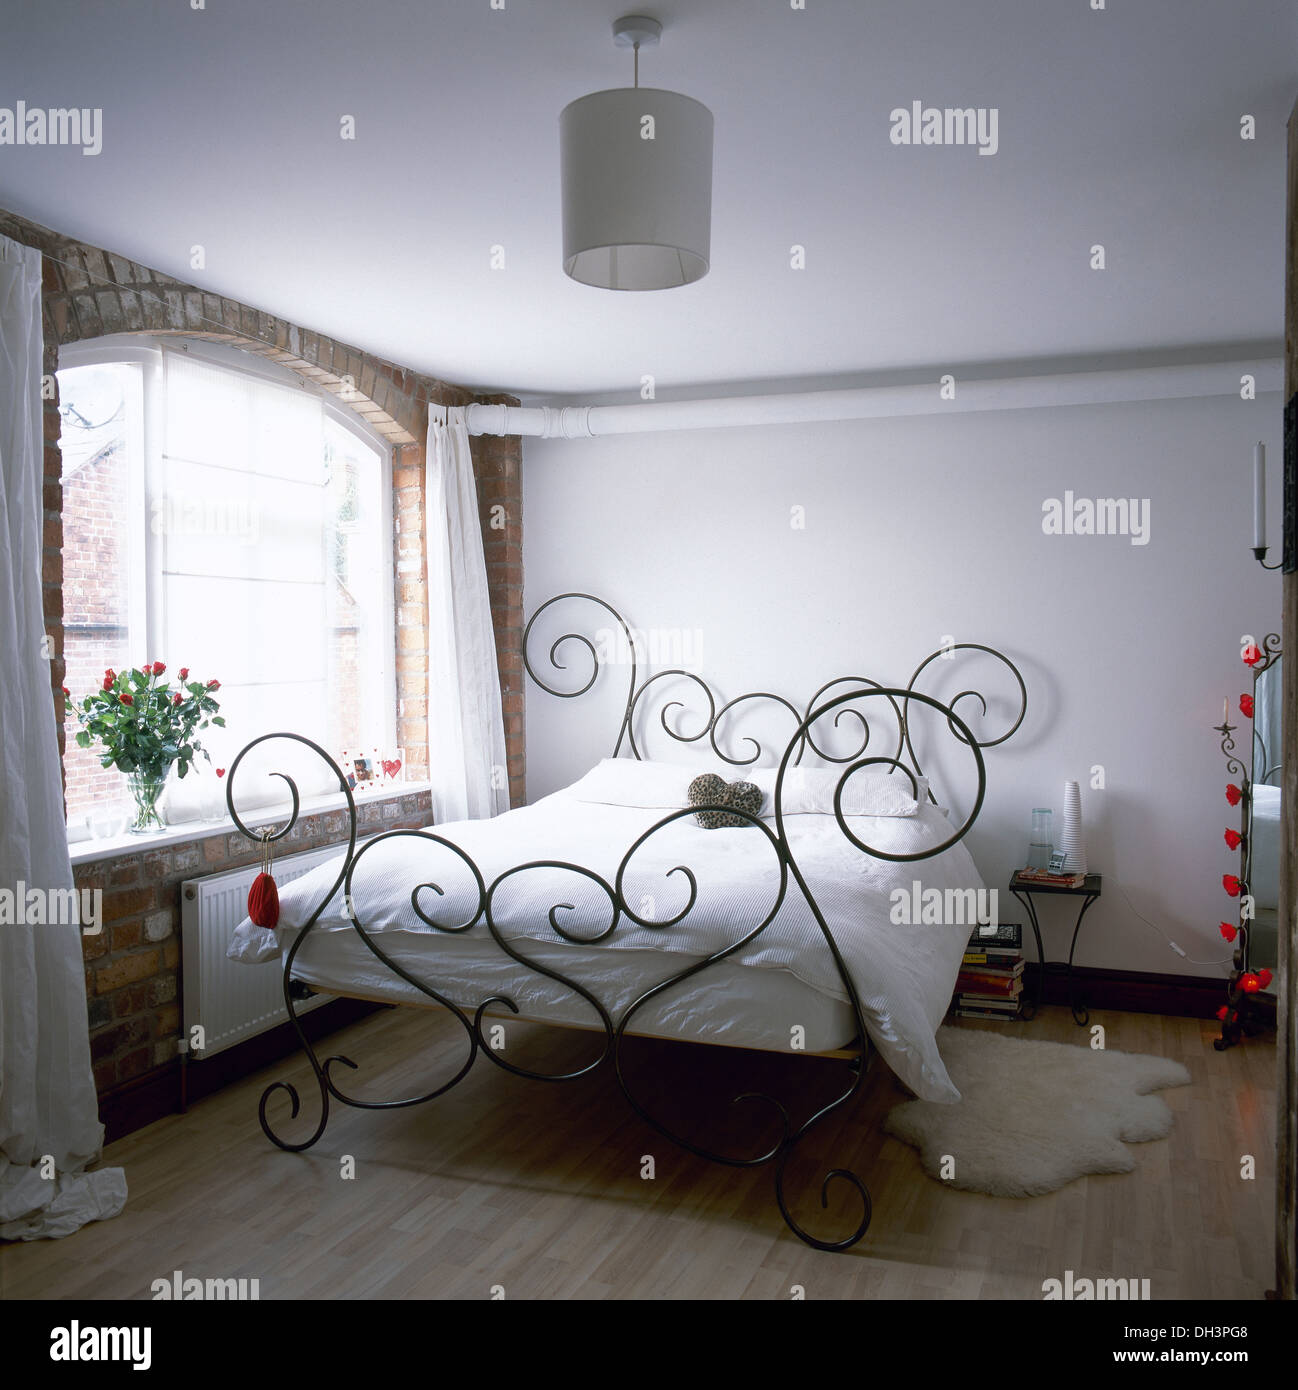 Decorativi in ferro battuto letto con lenzuola bianche in semplice bianco camera da letto con pavimento in legno e mattoni a vista parete finestra sottostante Foto Stock